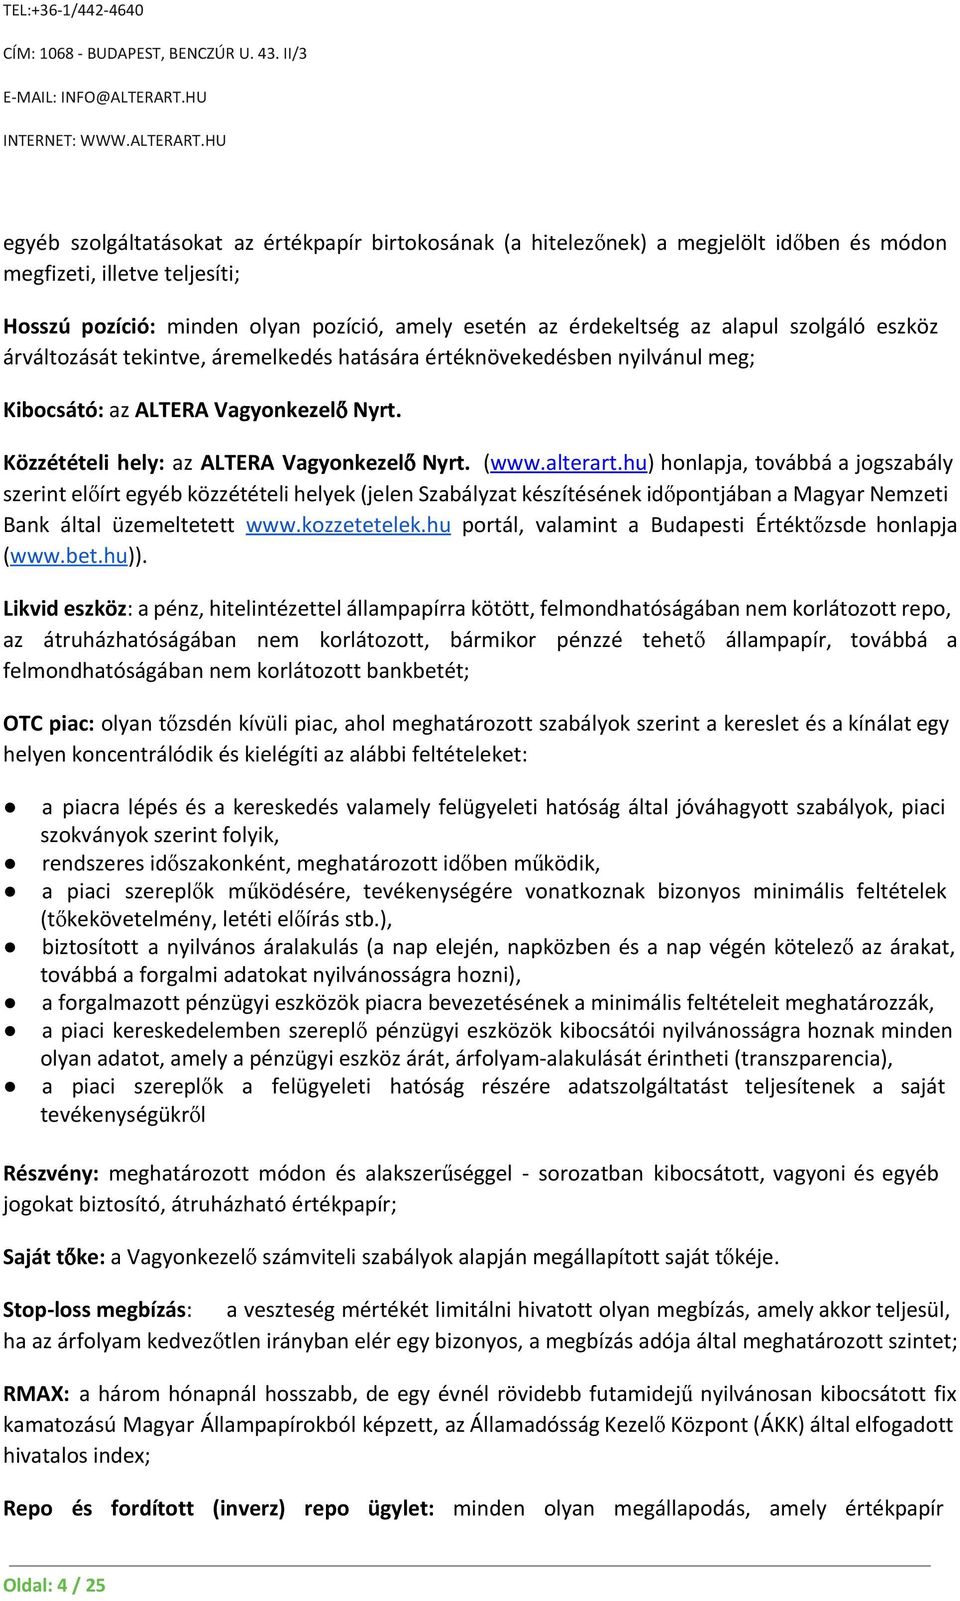 hu) honlapja, továbbá a jogszabály szerint előírt egyéb közzétételi helyek (jelen Szabályzat készítésének időpontjában a Magyar Nemzeti Bank által üzemeltetett www.kozzetetelek.